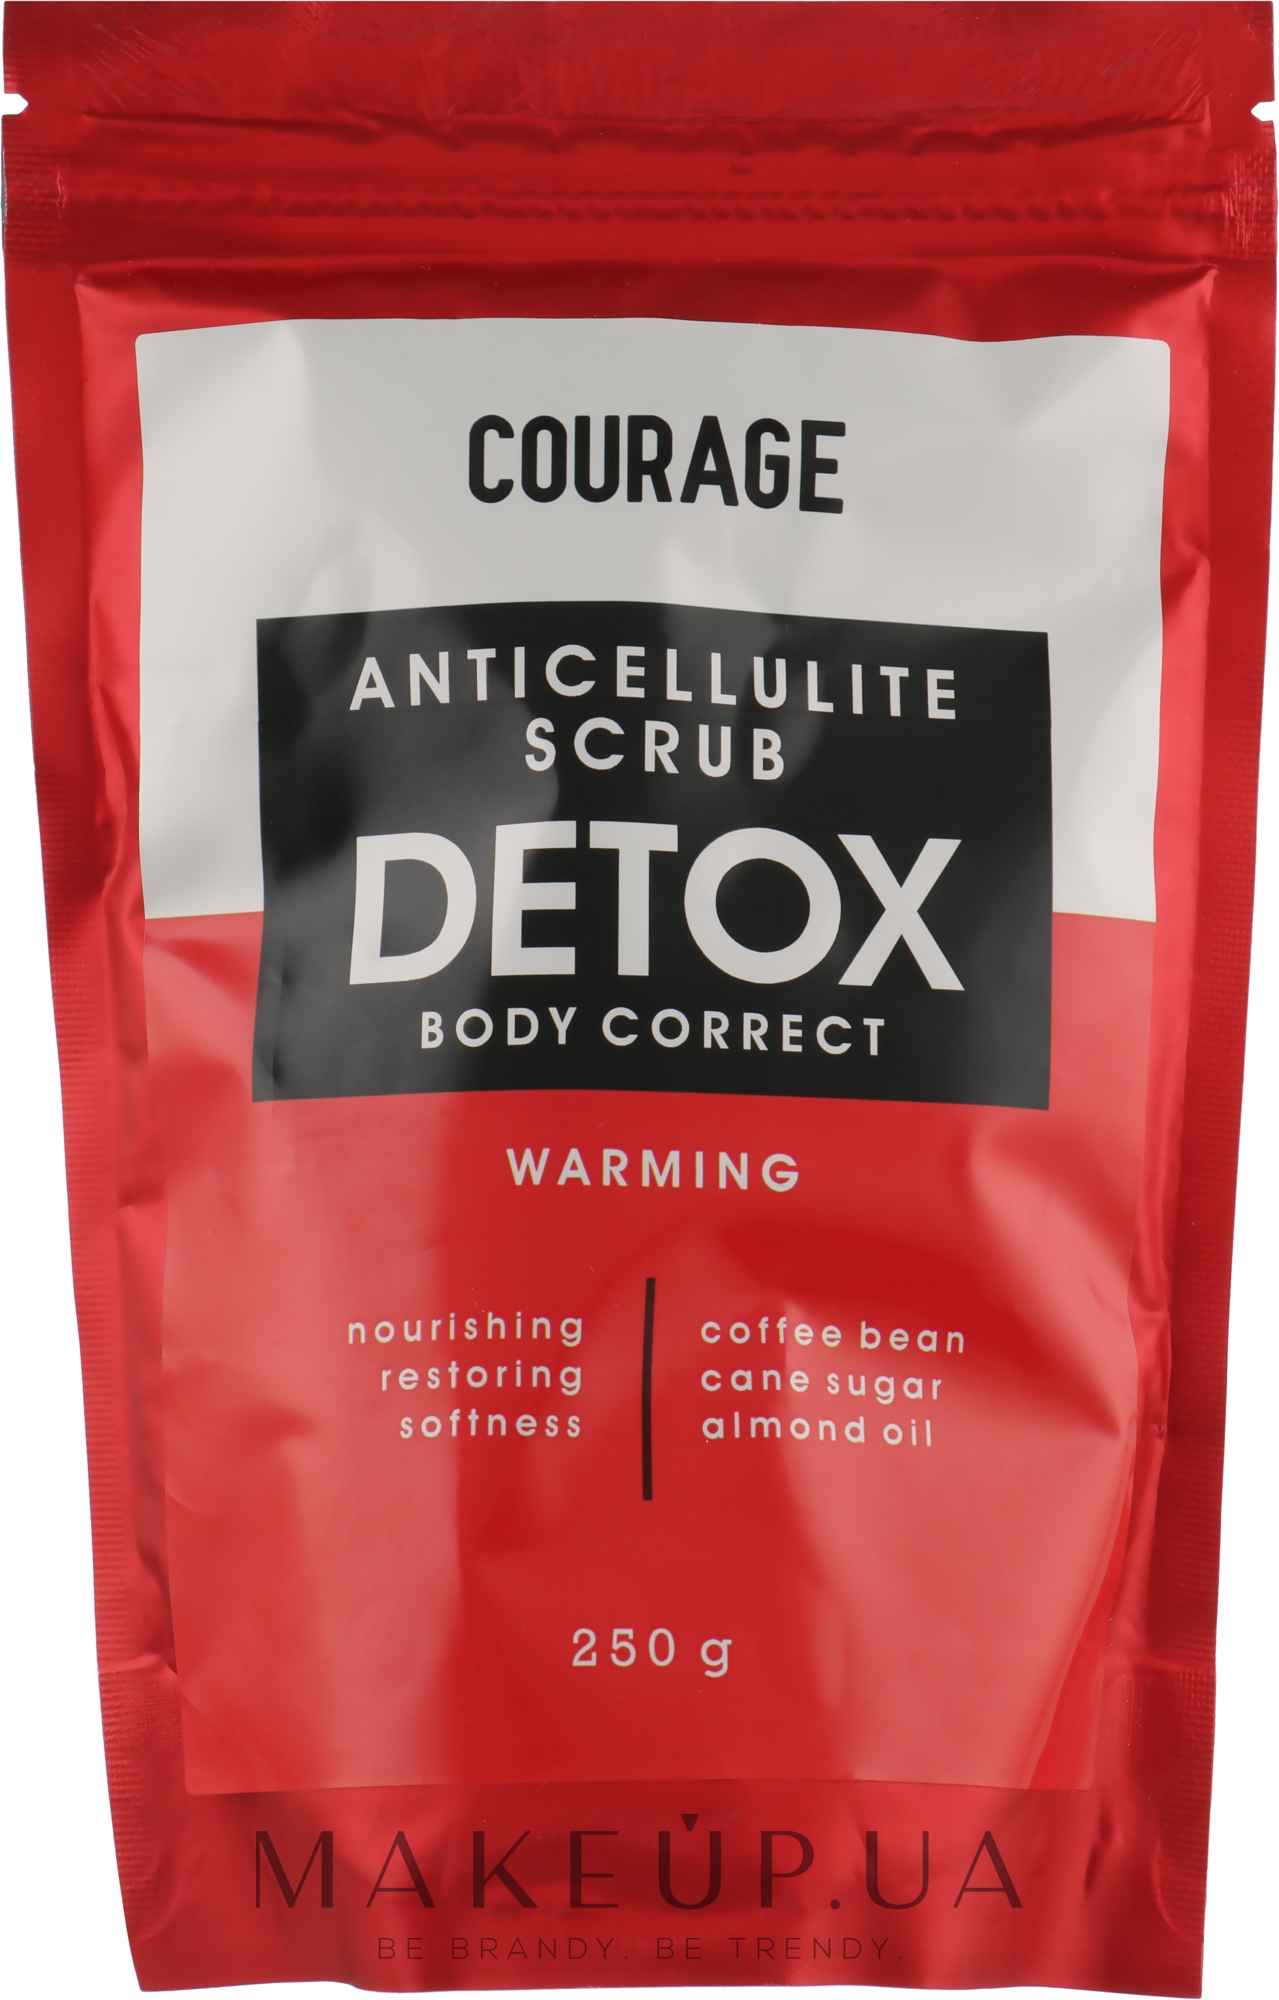 Скраб для тела антицеллюлитный - Courage Anticellulite Scrub Detox — фото 250g